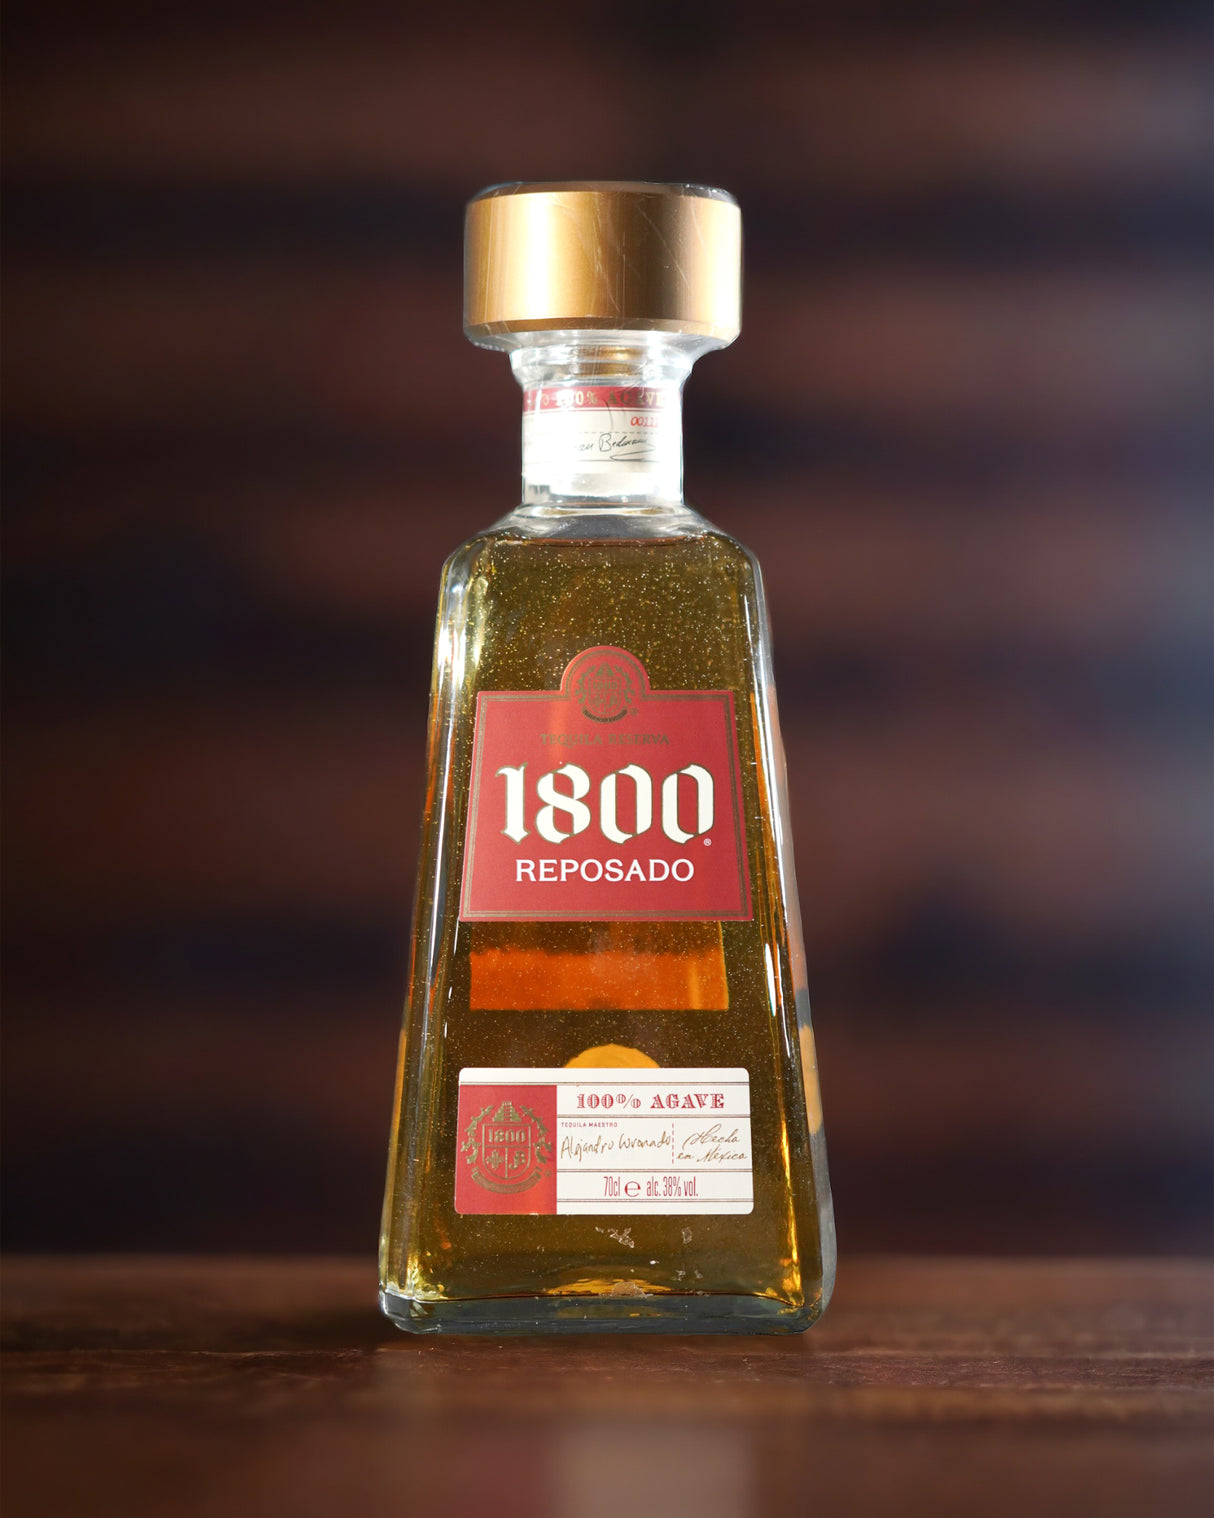 Jose Cuervo Tequila 1800 Reposado